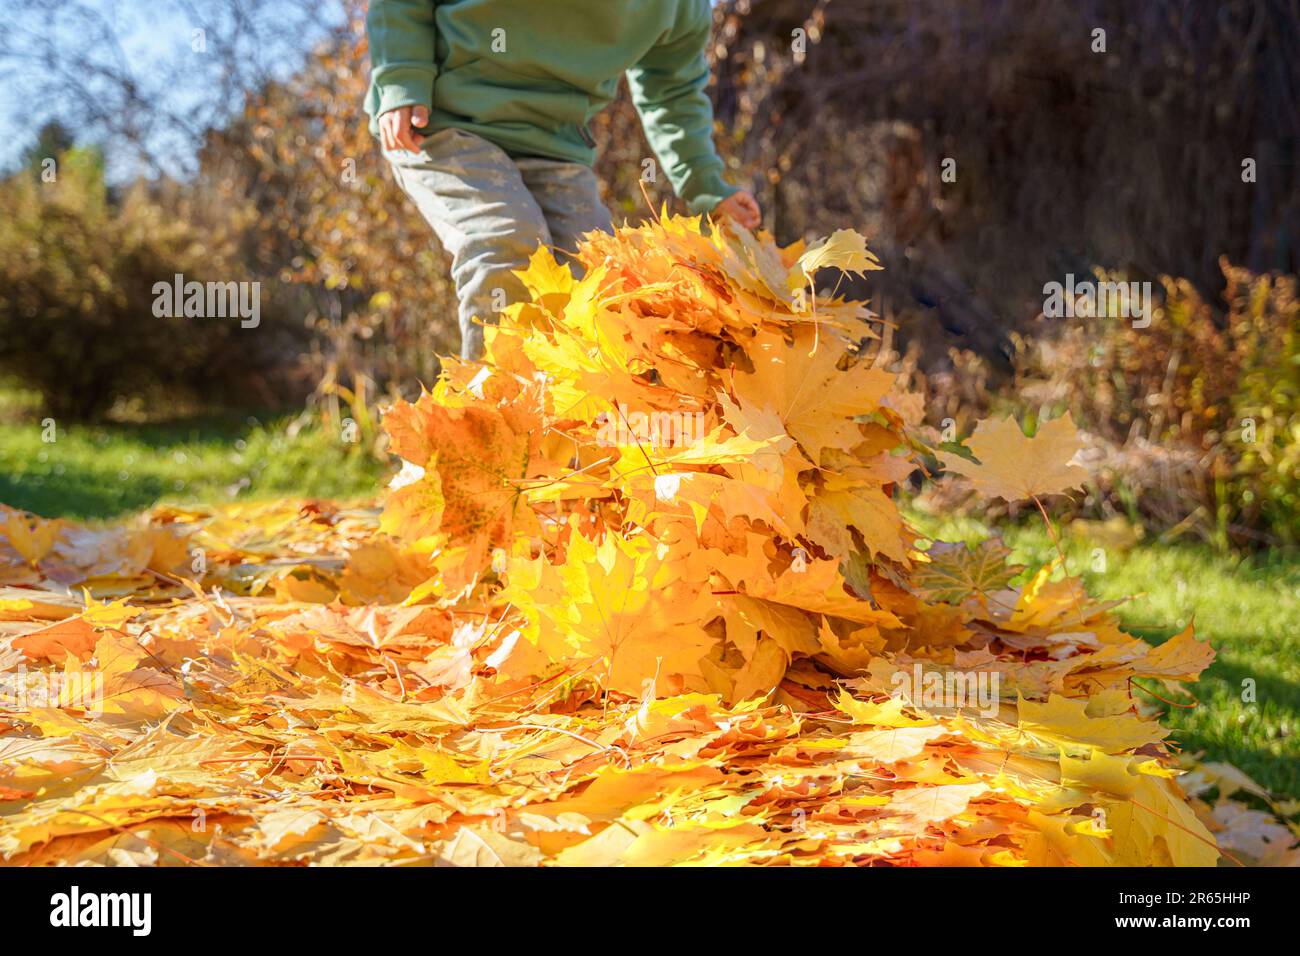 Jeune fille sautant sur le trampoline avec des feuilles d'automne. Feuillage d'érable jaune vif. Enfant marchant, s'amuser, jouer dans l'arrière-cour d'automne. Extérieur Banque D'Images